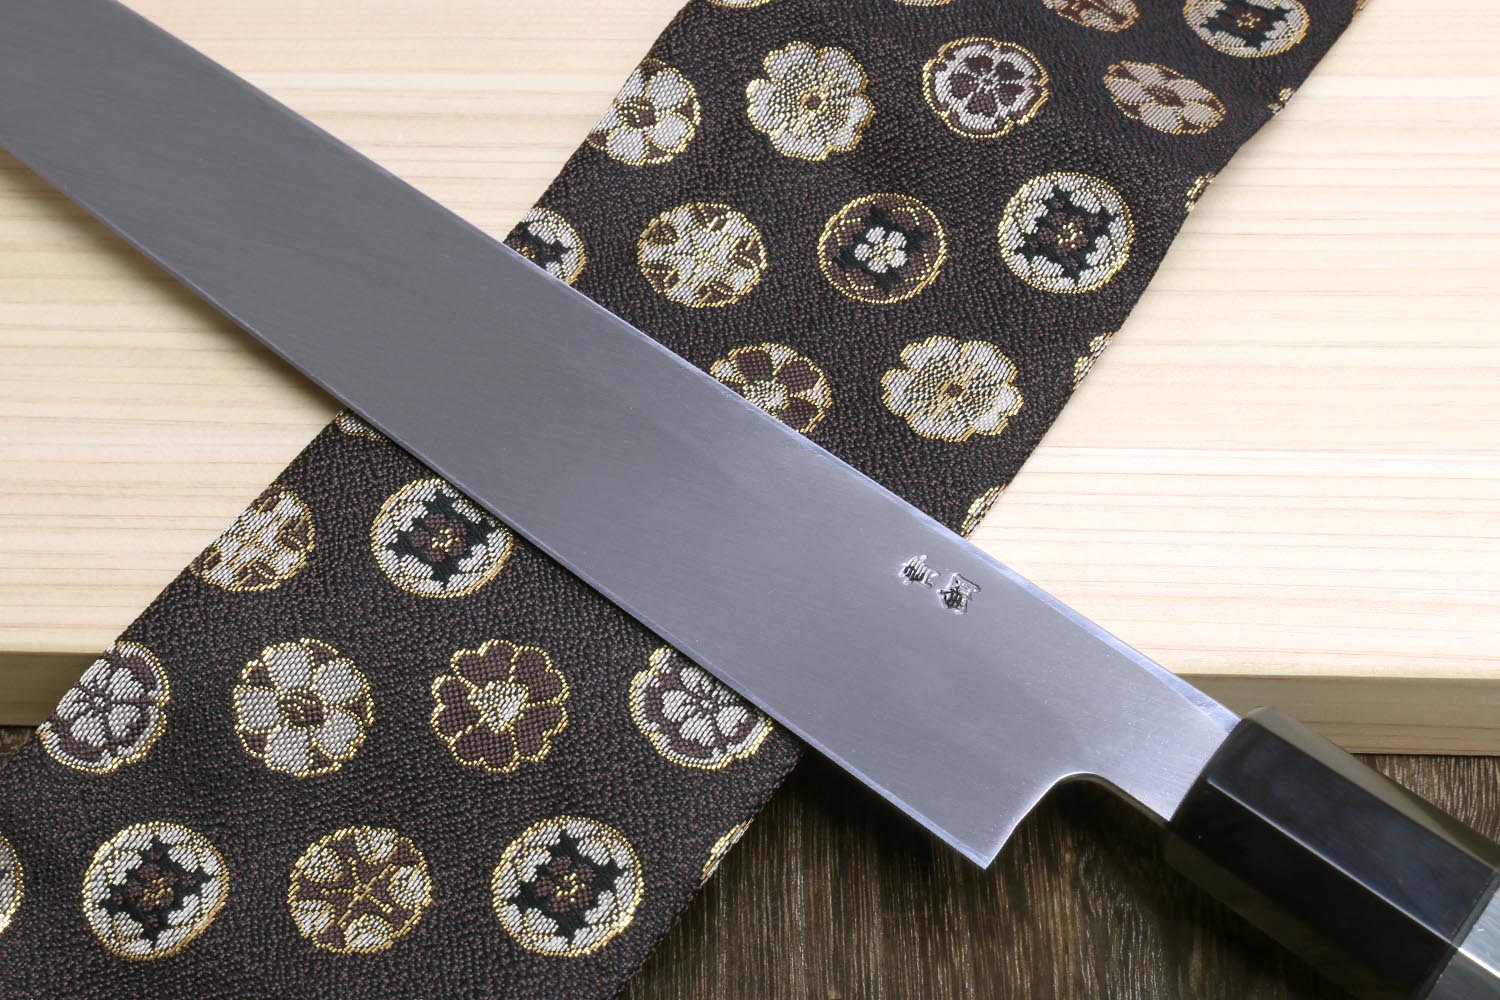 ARITSUGU Blue Steel Honyaki Yanagi Kitchen Japanese Chef Knife Saya 360mm  14.1 AT001gs - Japanese Knives